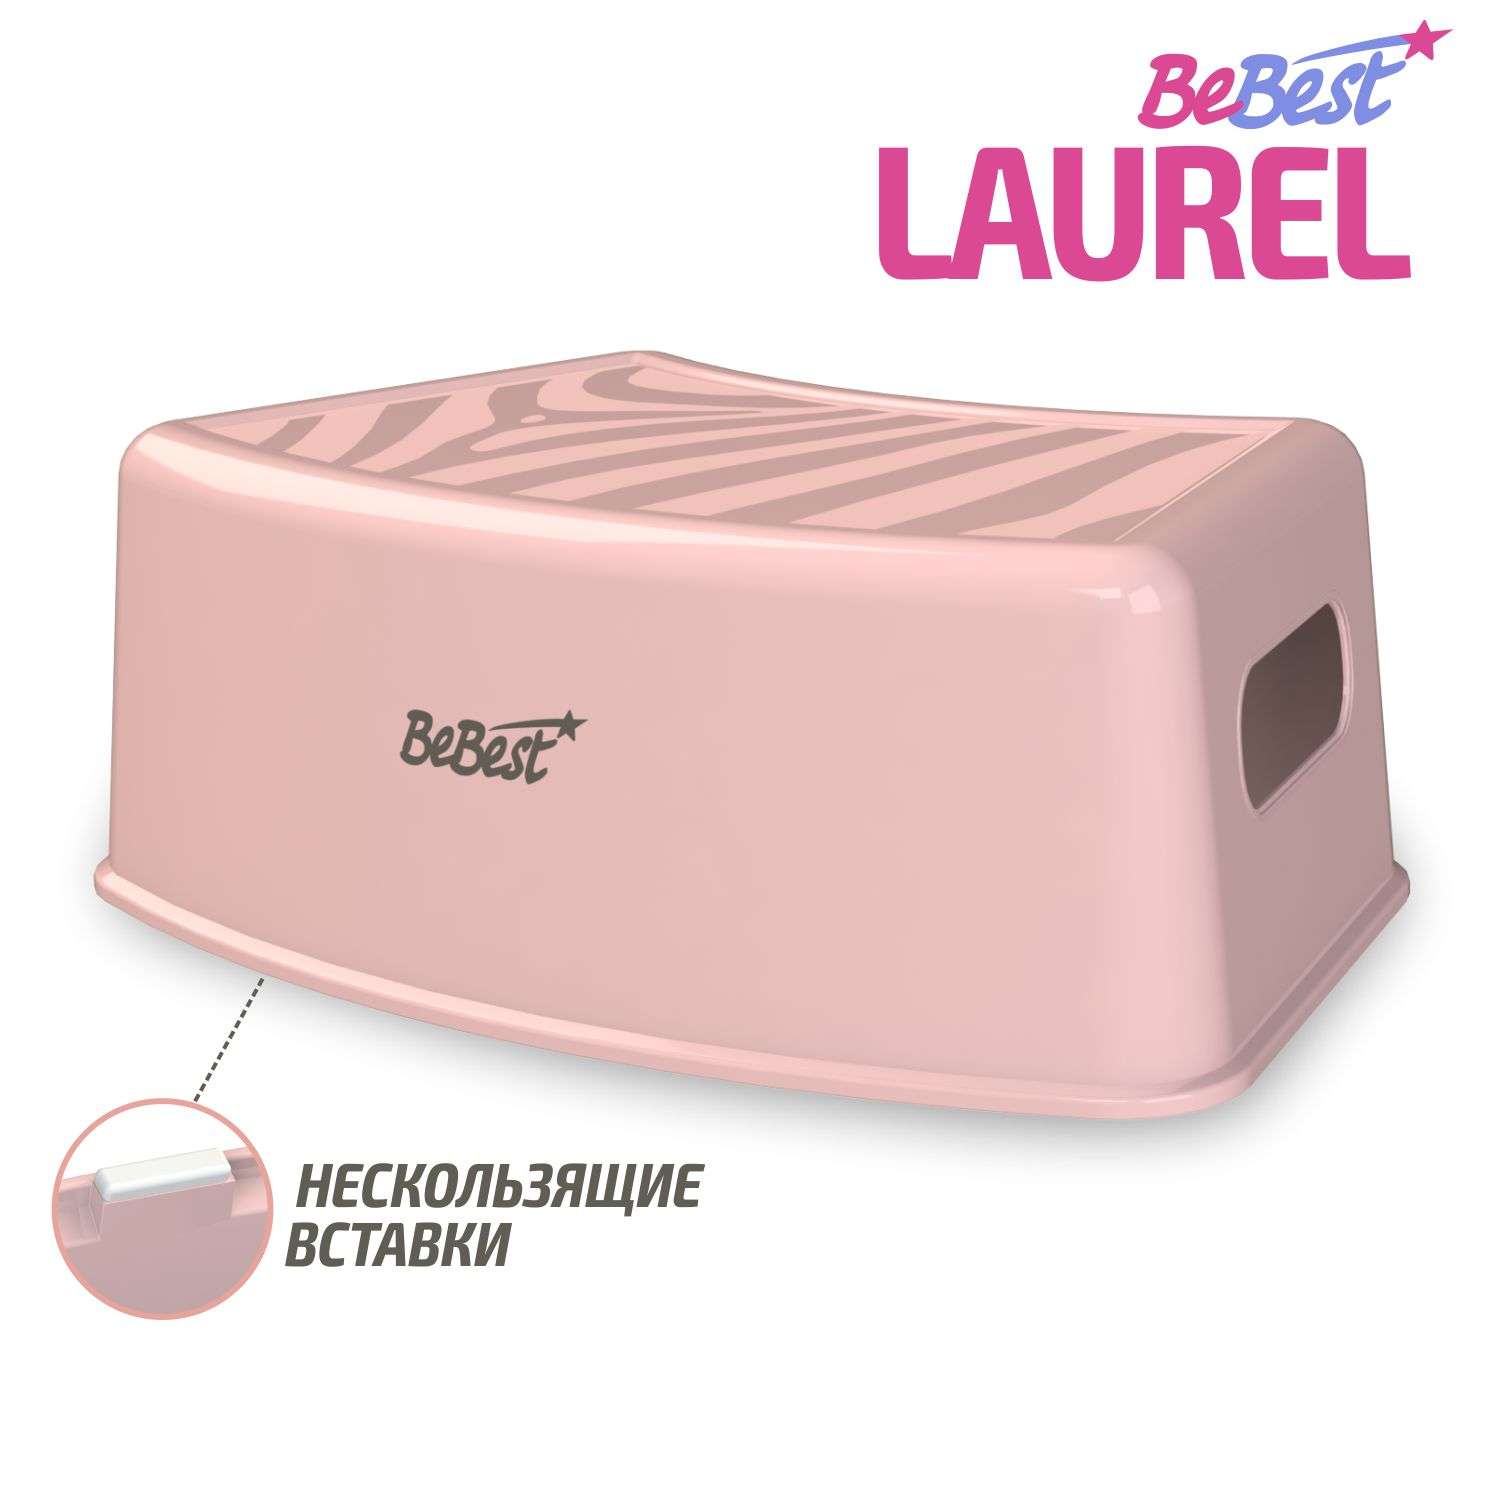 Подставка для ног BeBest Laurel розовый - фото 1